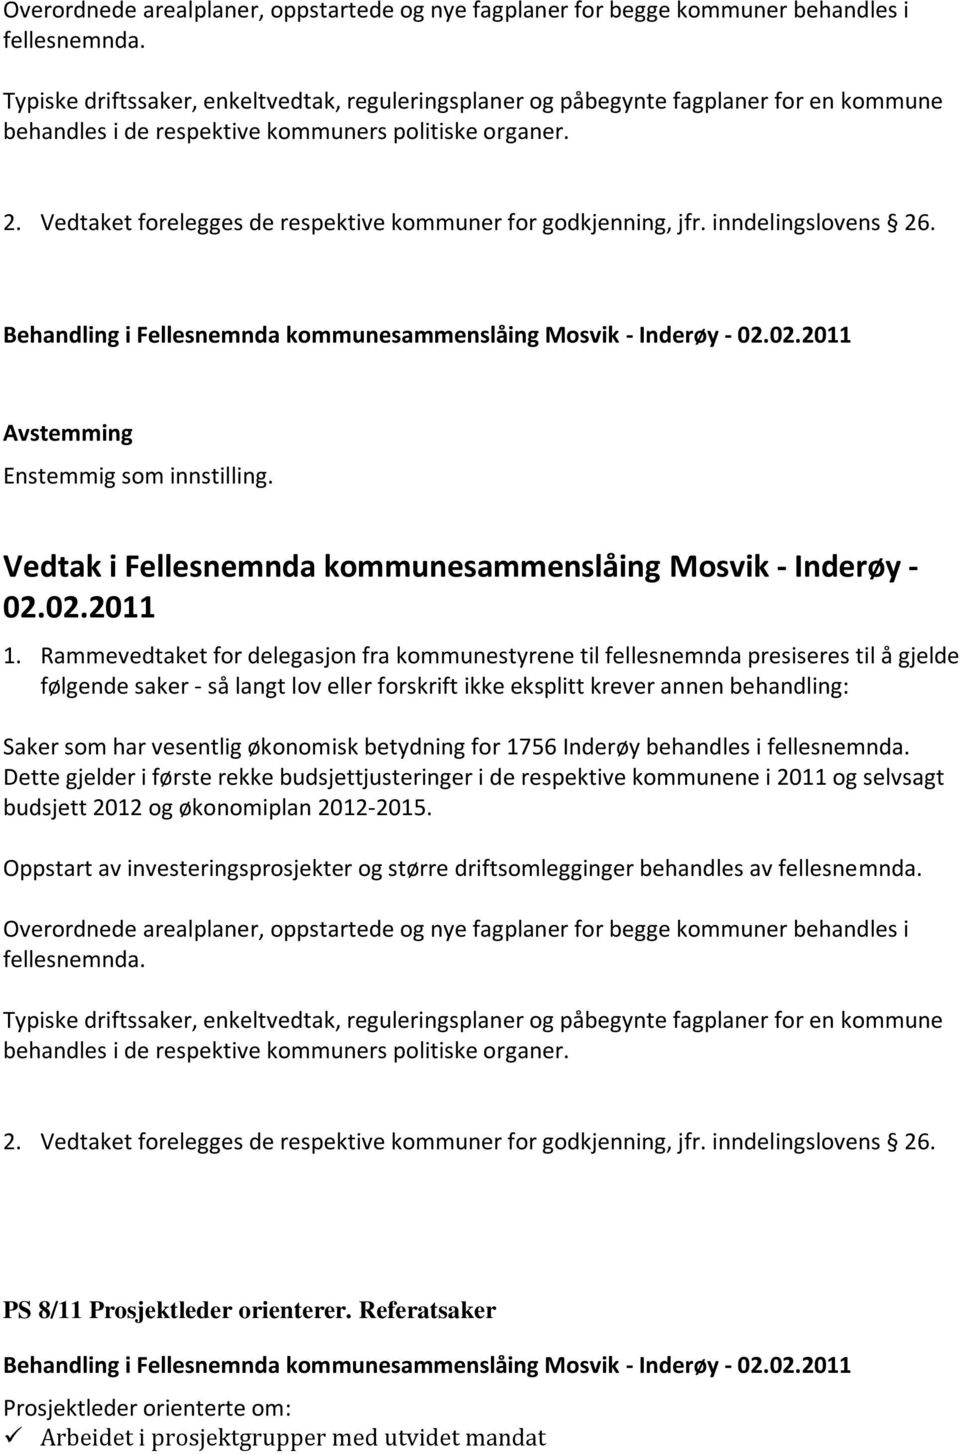 Vedtaket forelegges de respektive kommuner for godkjenning, jfr. inndelingslovens 26. Behandling i Fellesnemnda kommunesammenslåing Mosvik - Inderøy - 1.